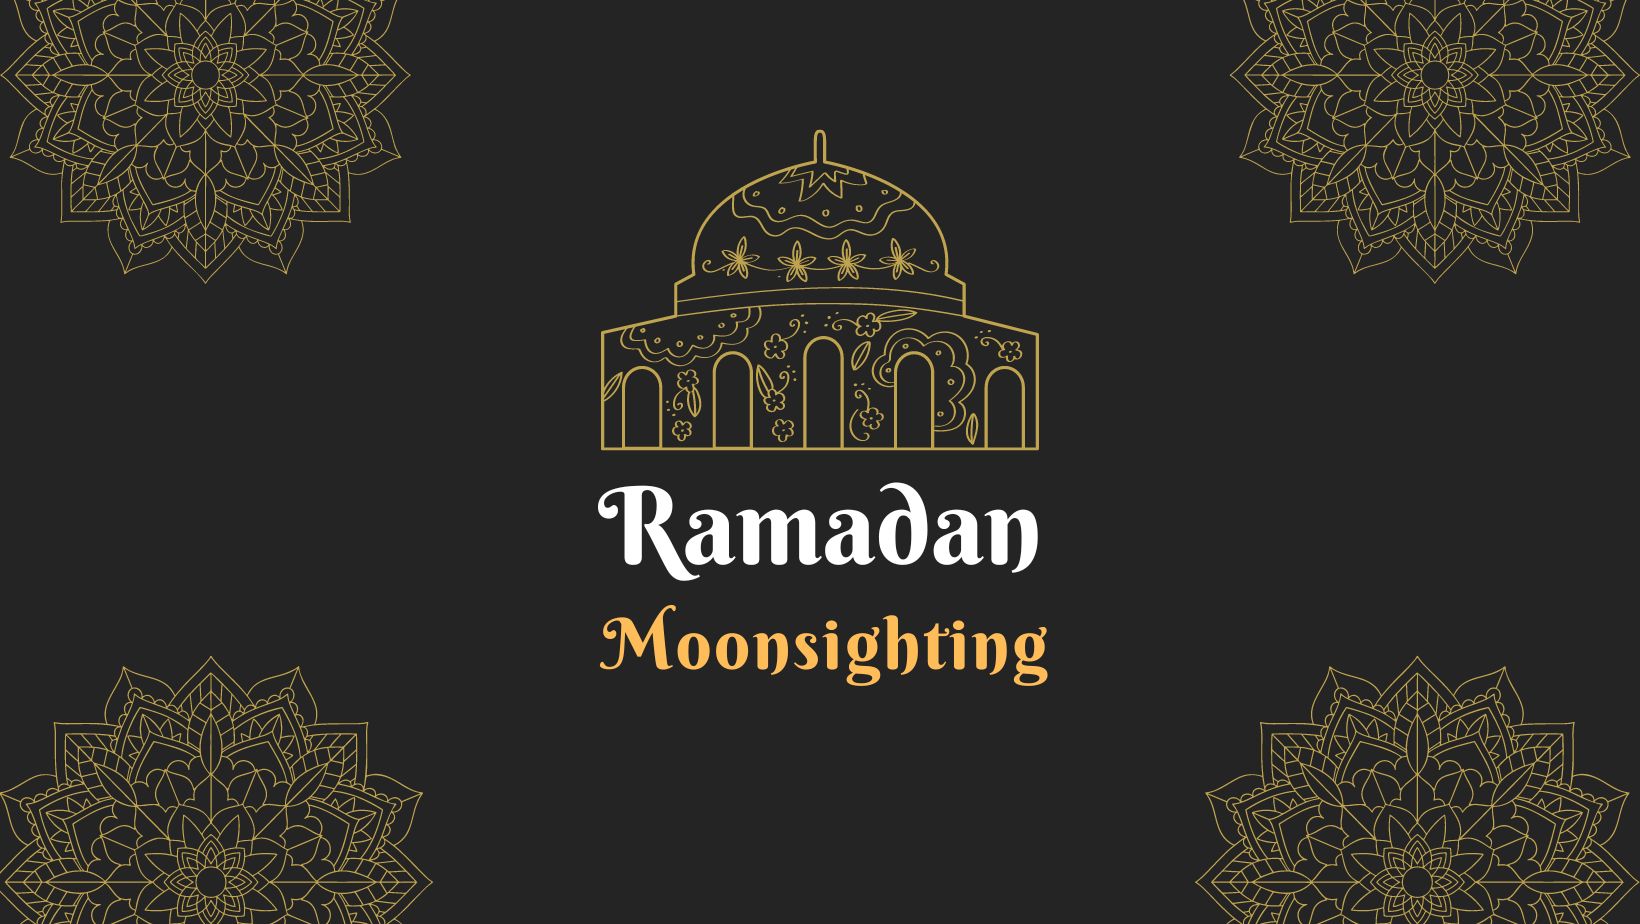 Ramadhaan Moonsighting